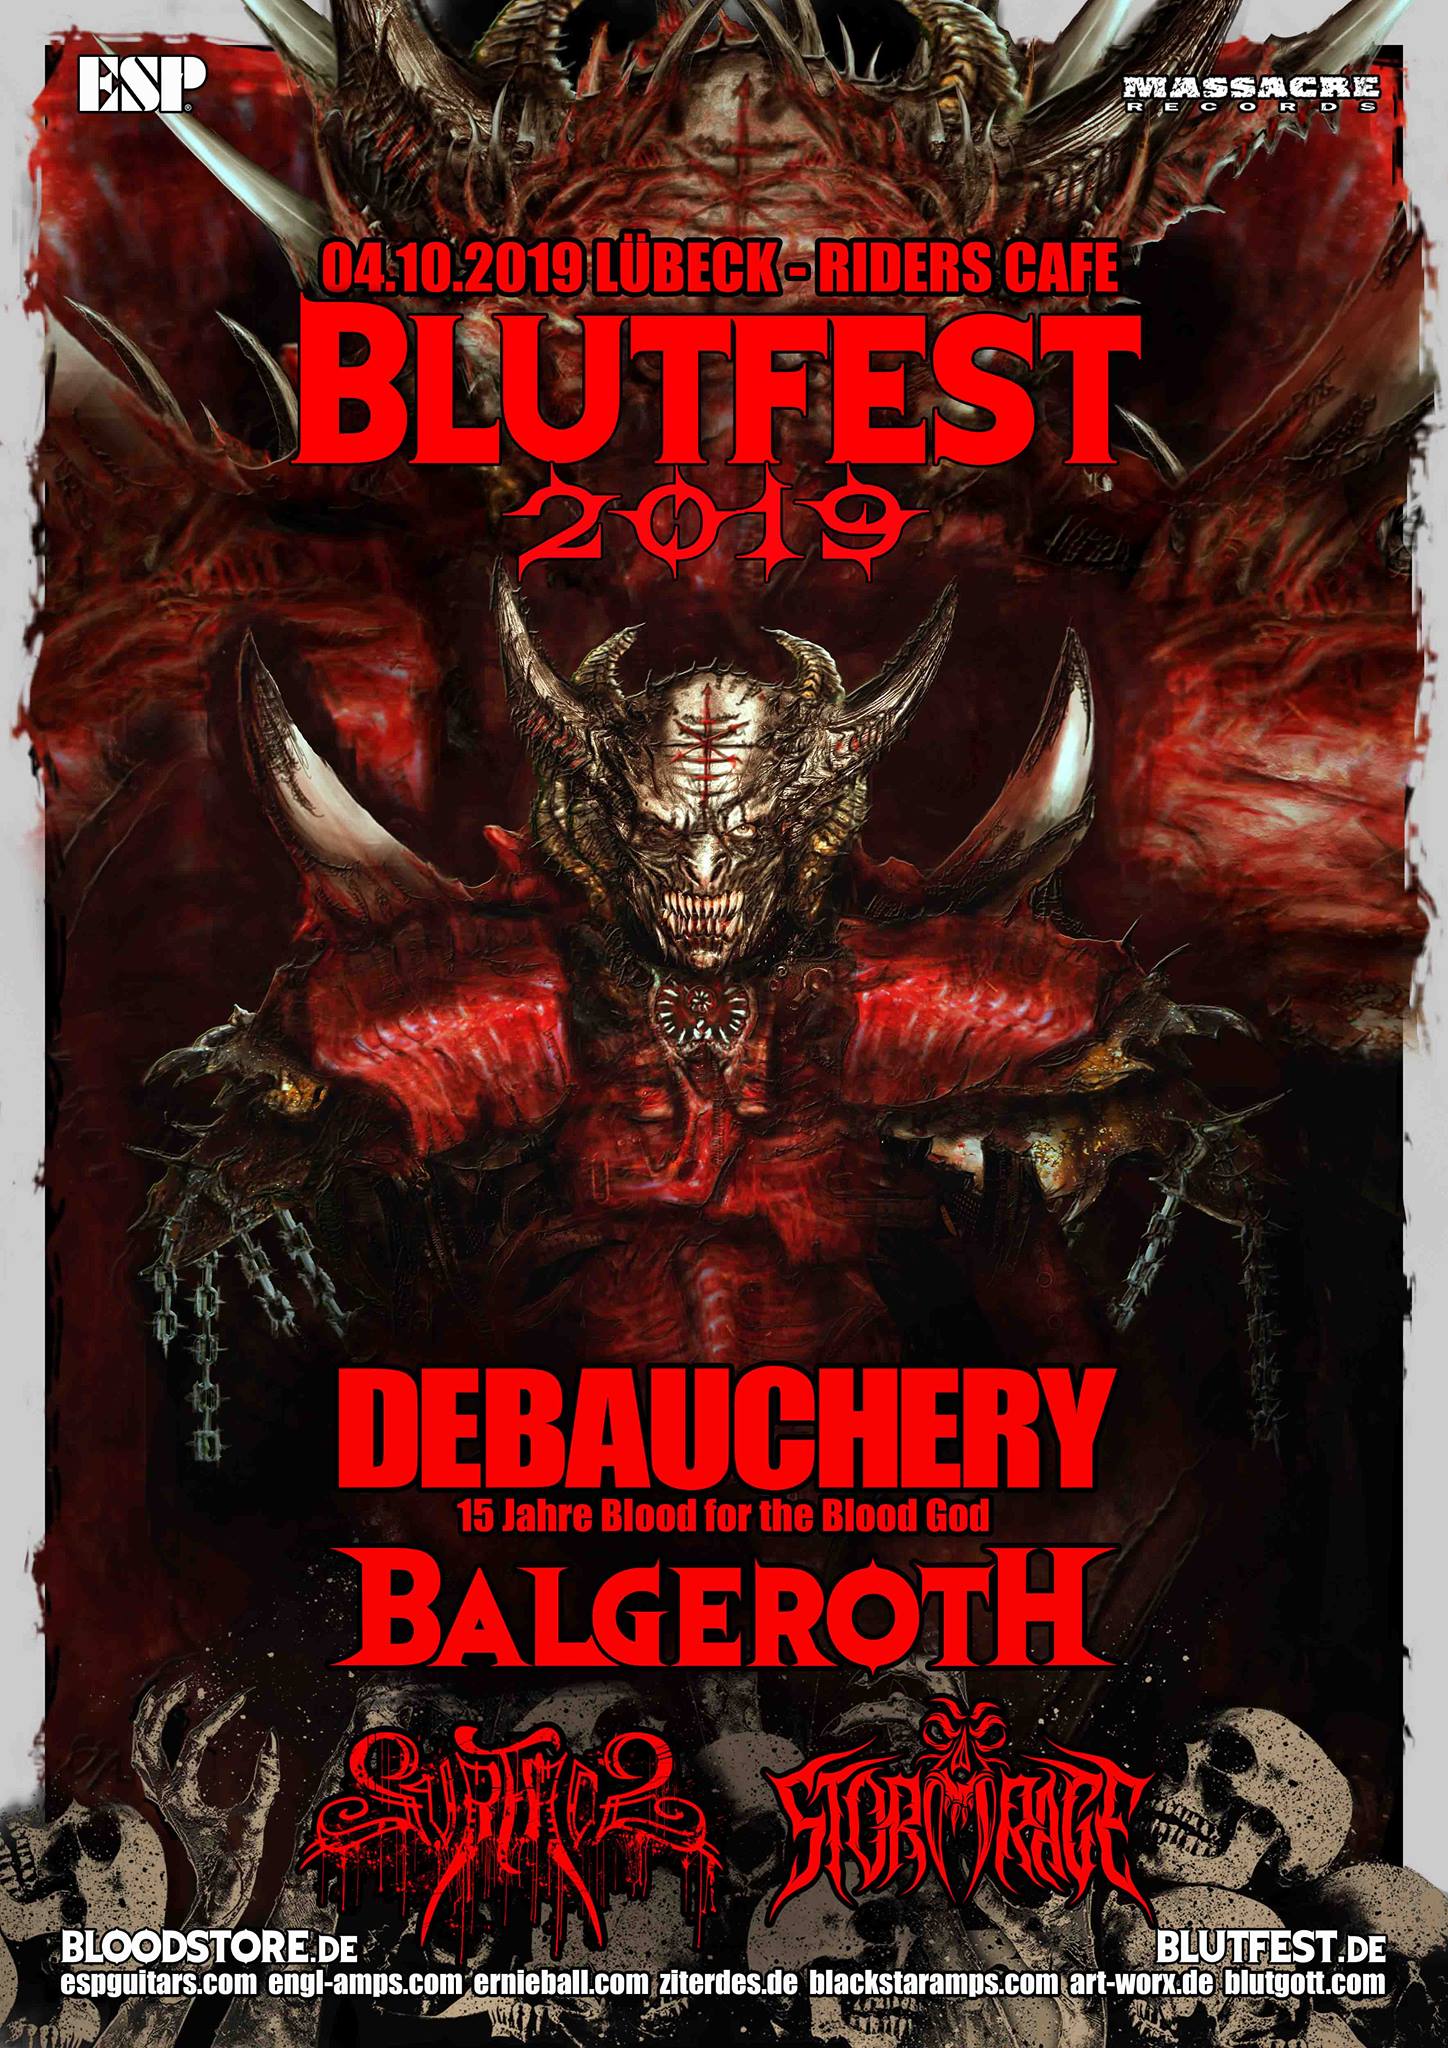 Blutfest 2019 Lübeck: Debauchery, Balgeroth, Surface, Stormrage